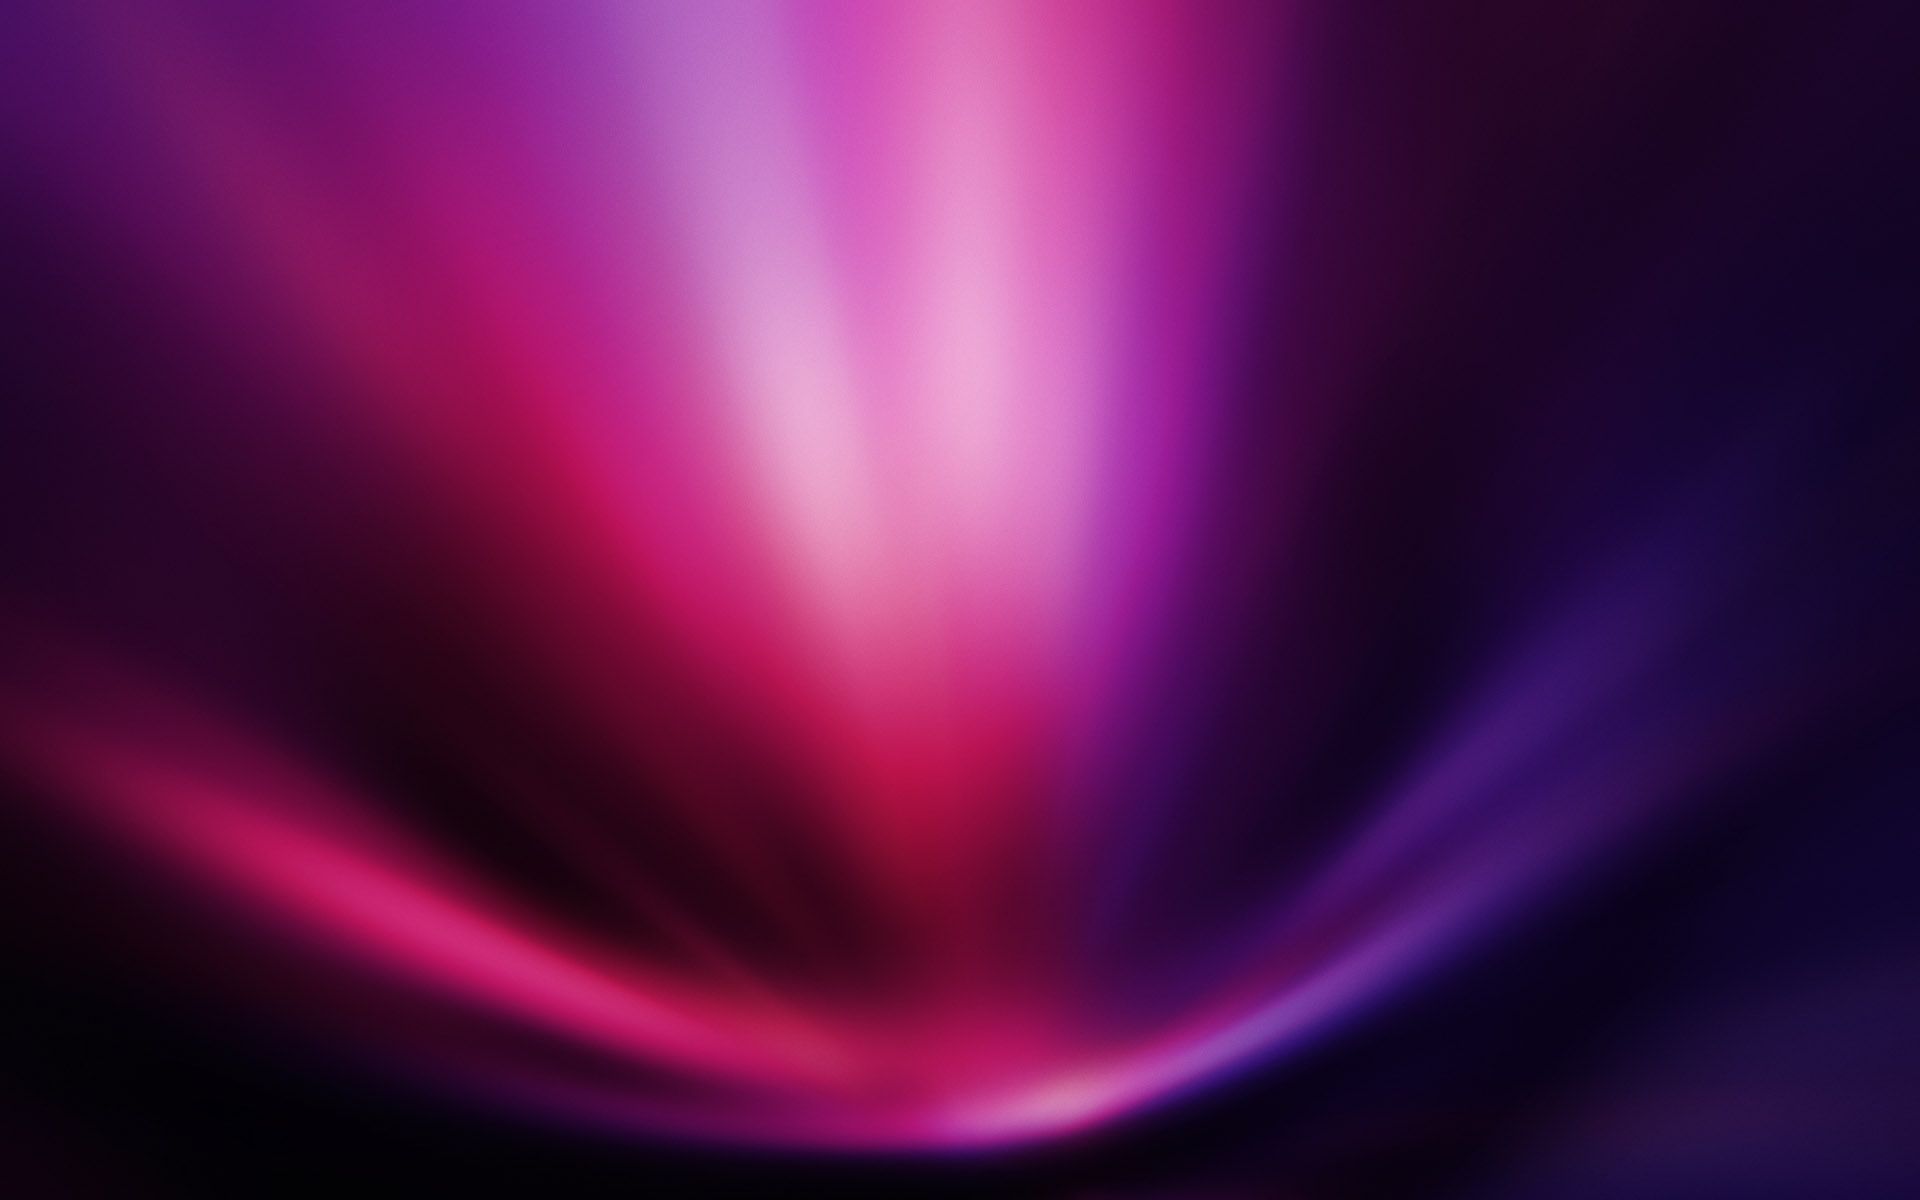 Descarga gratuita de fondo de pantalla para móvil de Rosa, Púrpura, Abstracto.